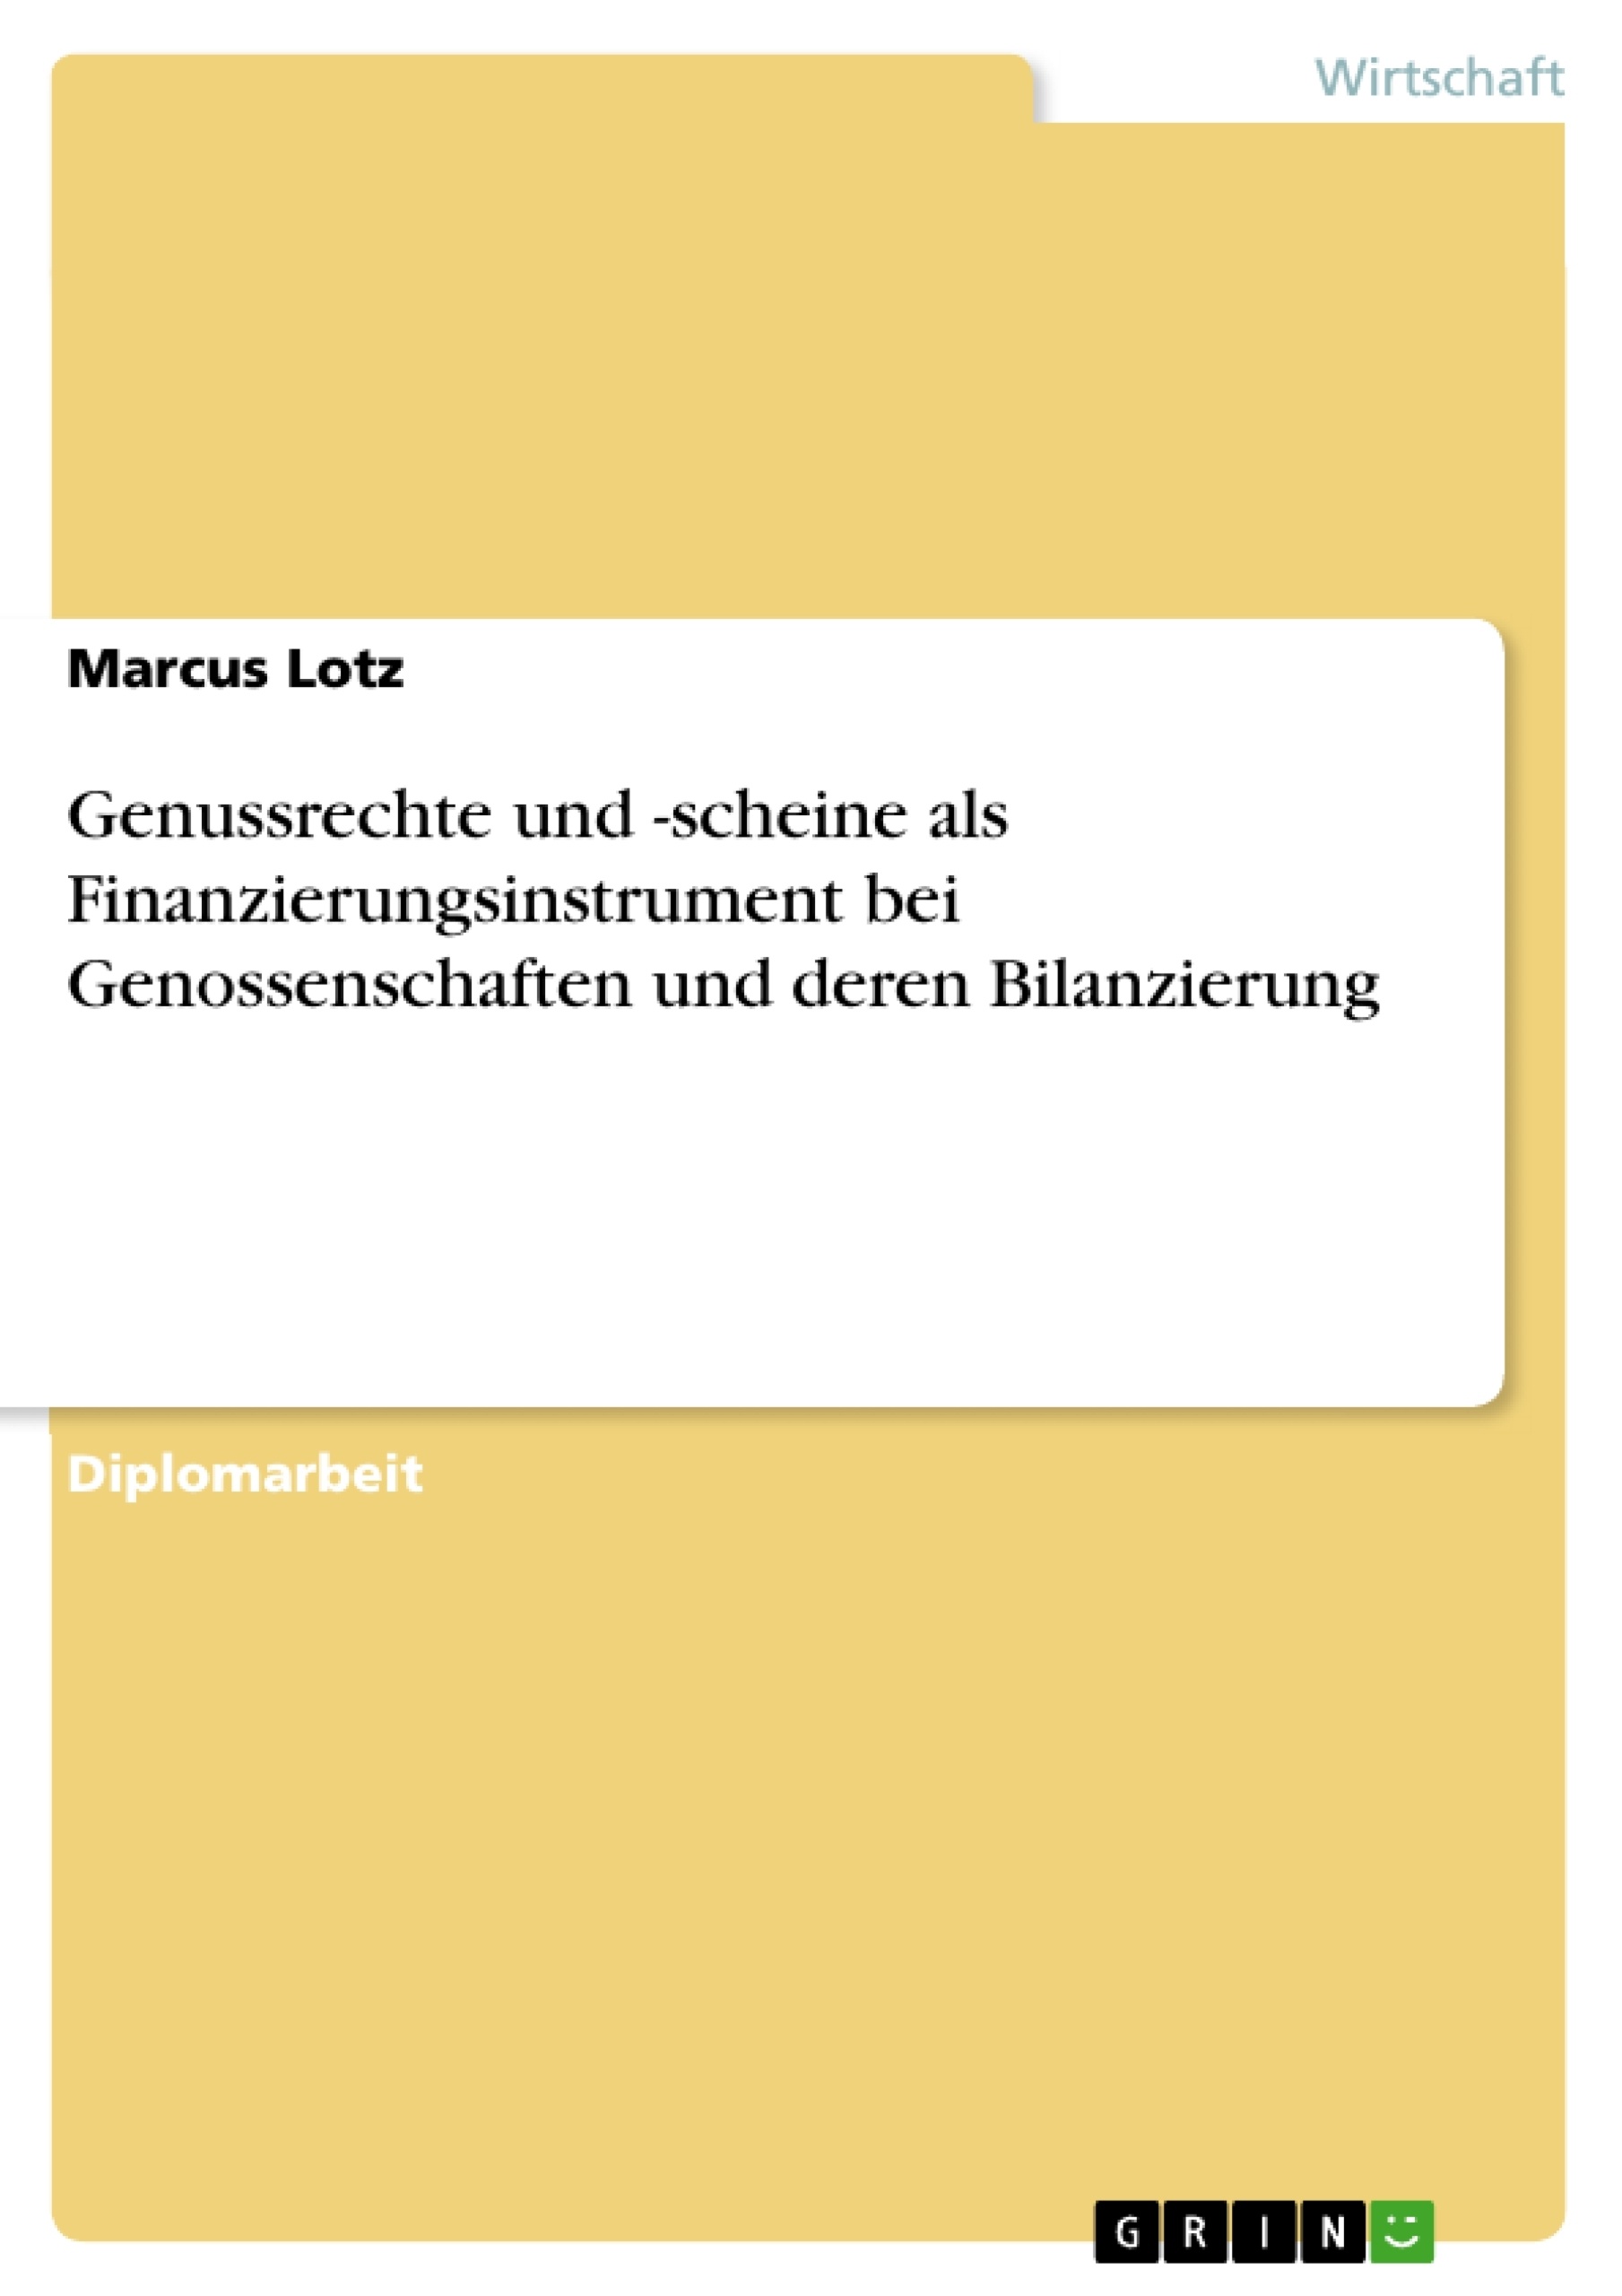 Title: Genussrechte und -scheine als Finanzierungsinstrument bei Genossenschaften und deren Bilanzierung